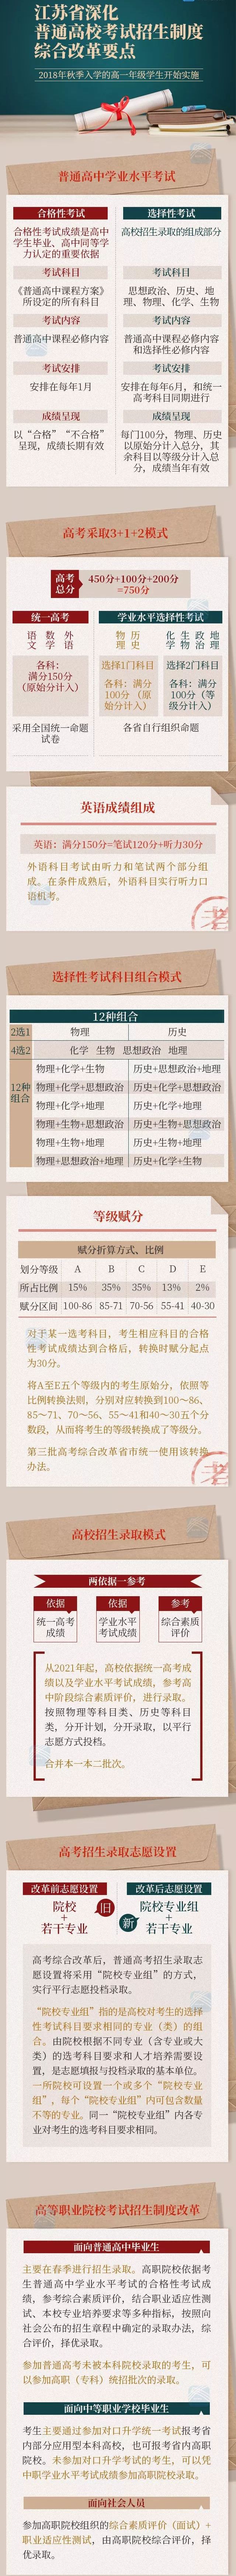 江苏省深化普通高校考试招生制度综合改革要点